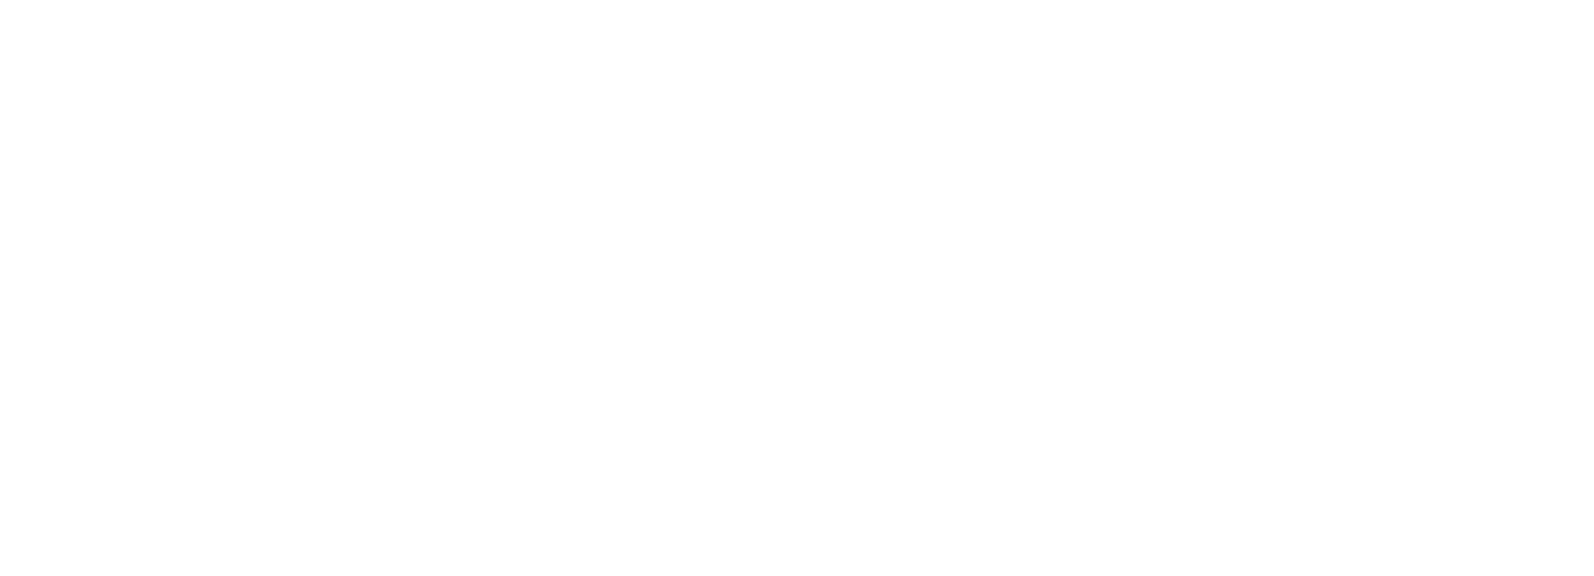 VTEX logo large for dark backgrounds (transparent PNG)